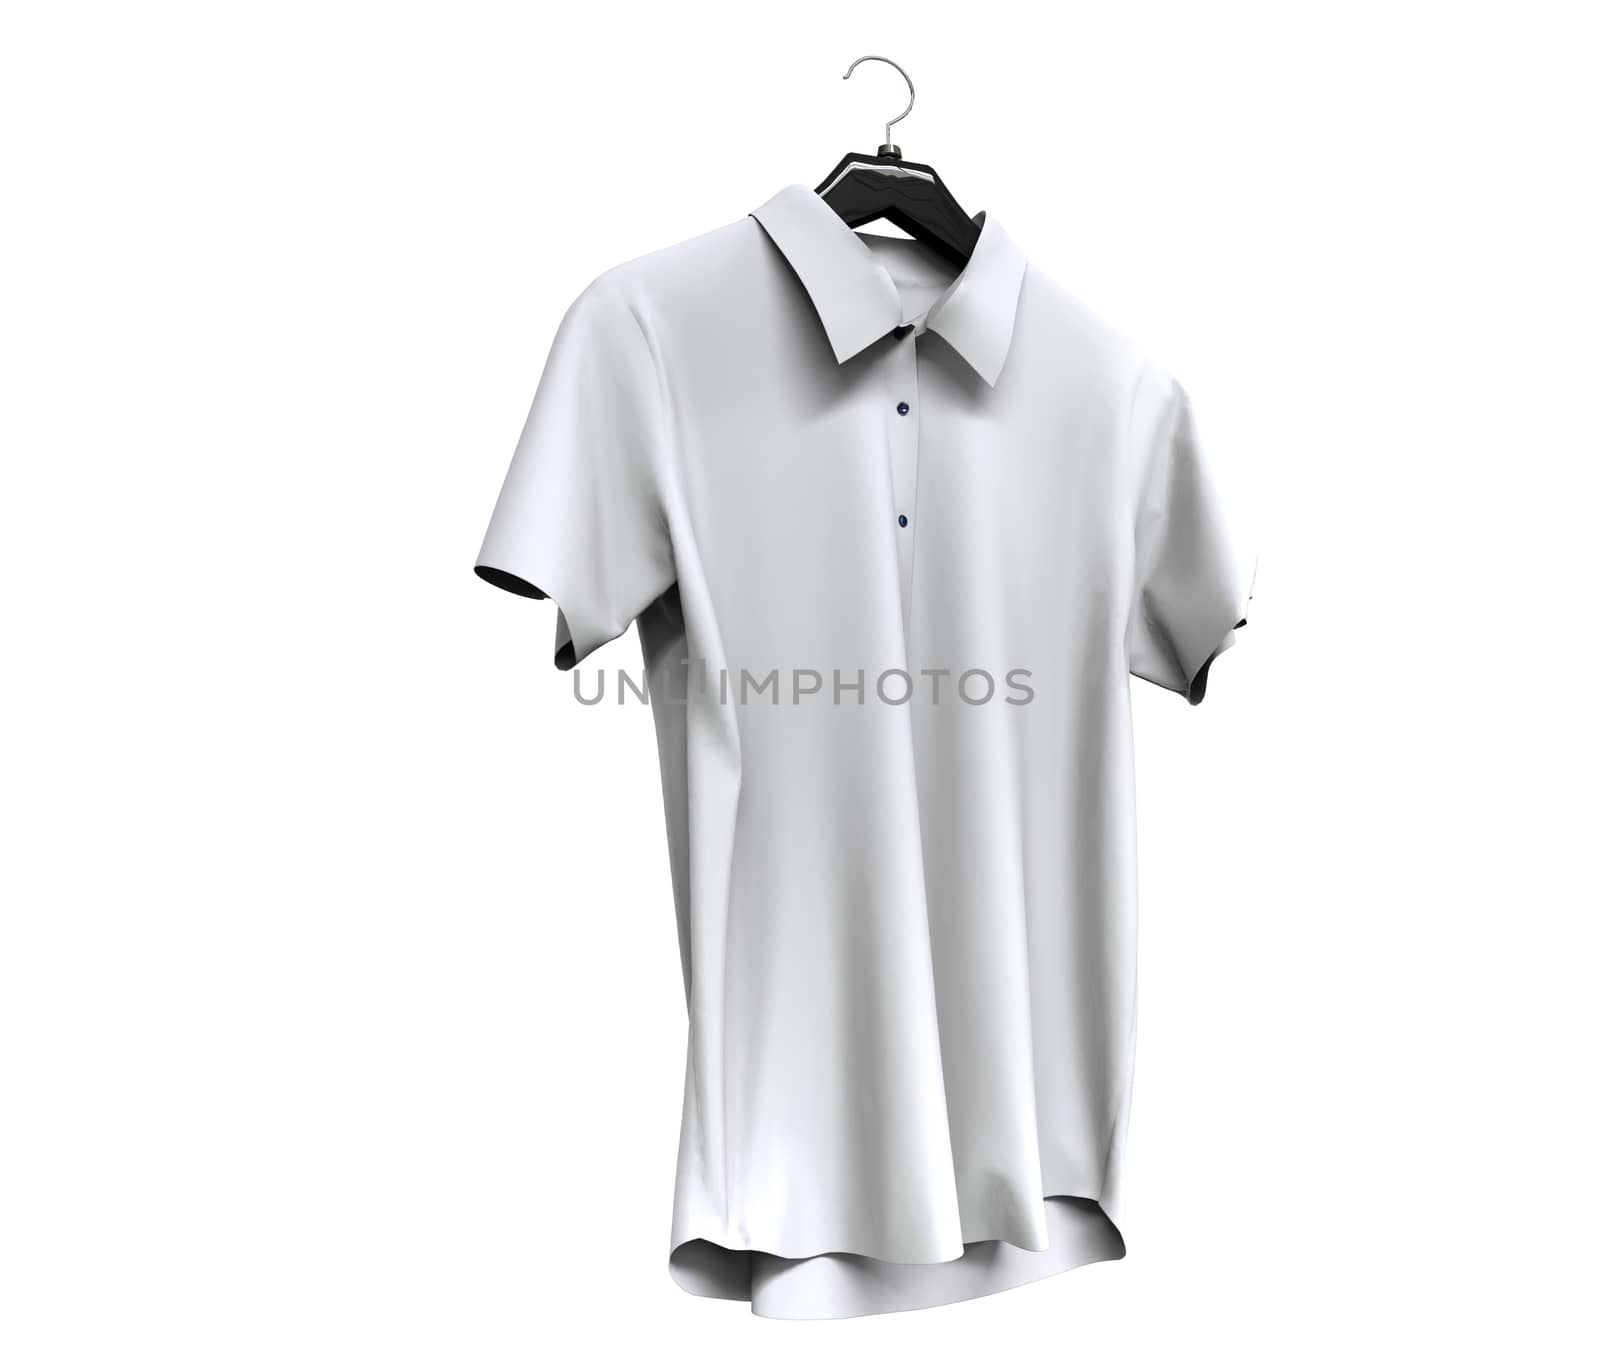 White short sleeve shirt isolated on white background.